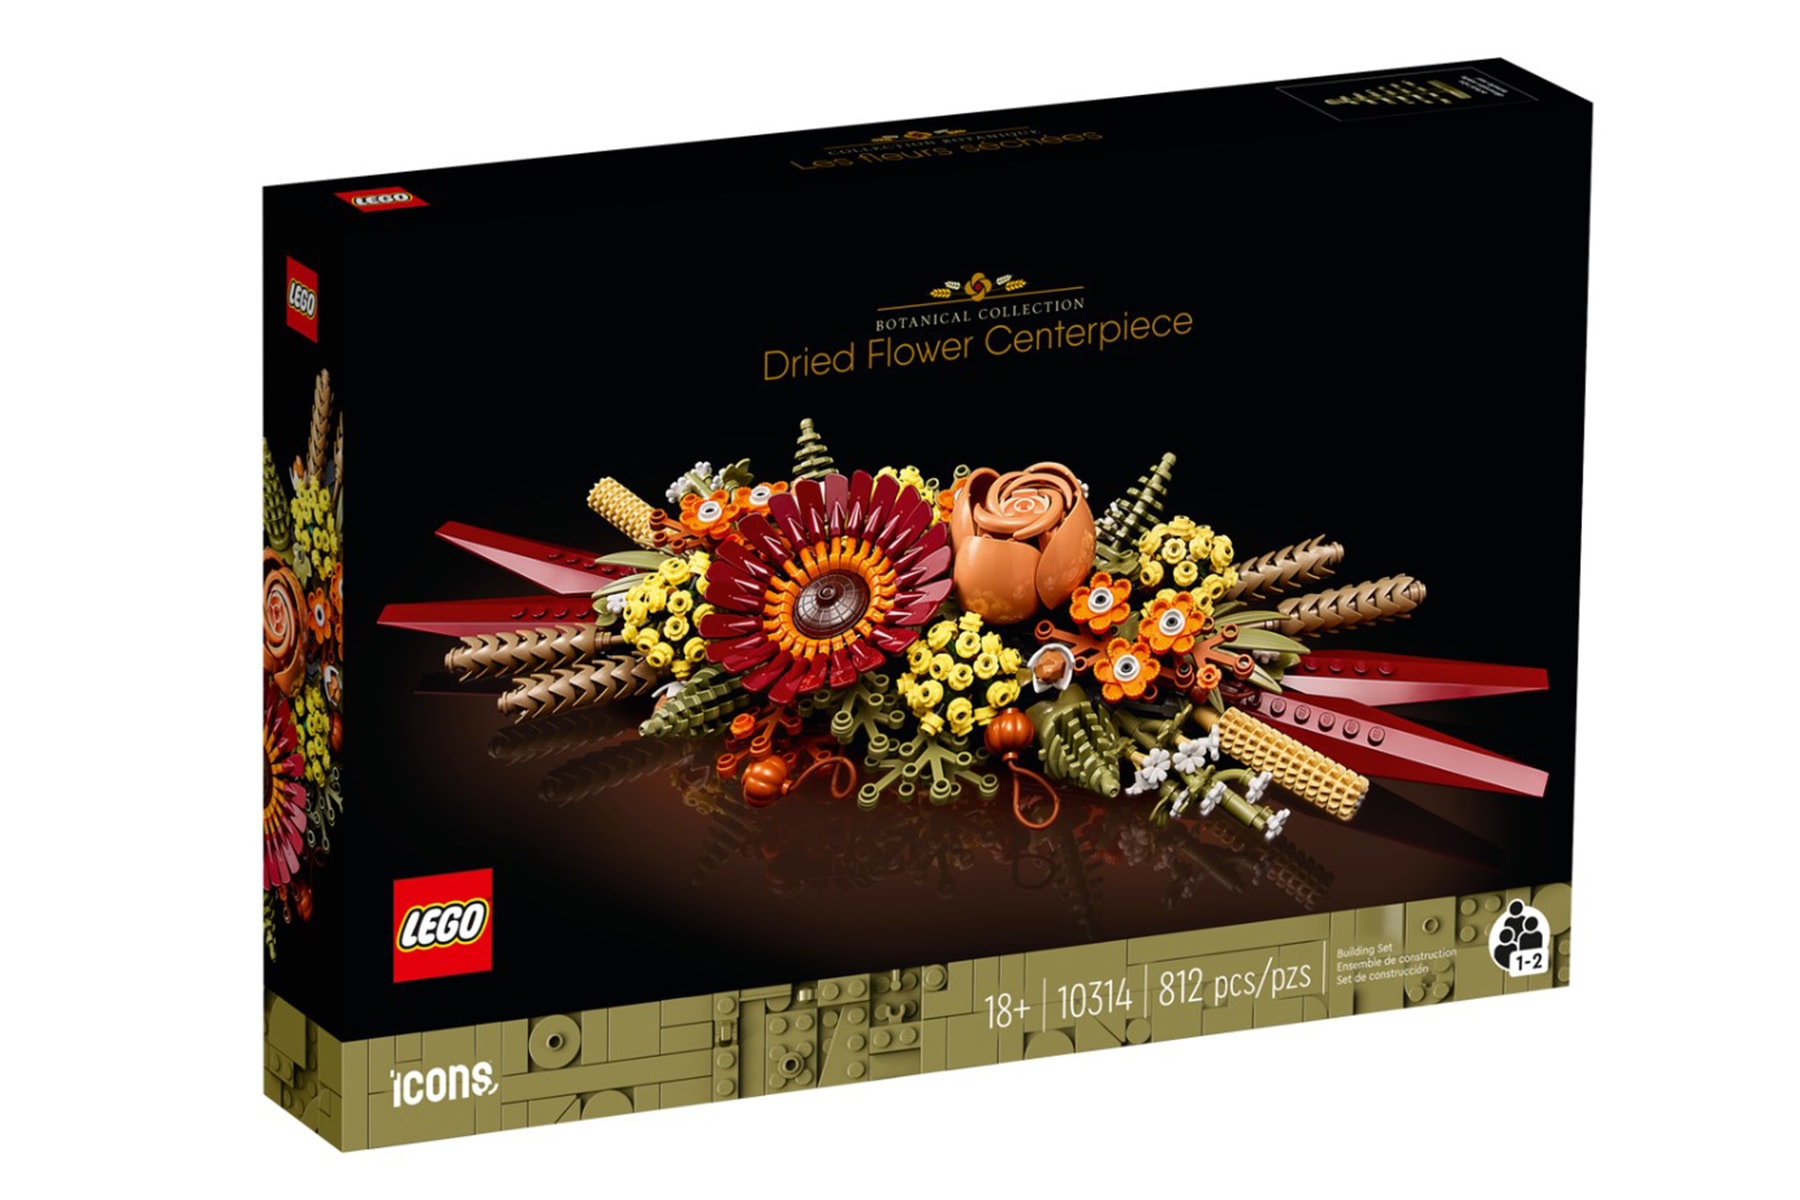 LEGO 花藝系列「乾燥花」、「野花花束」全新積木模型即將發售